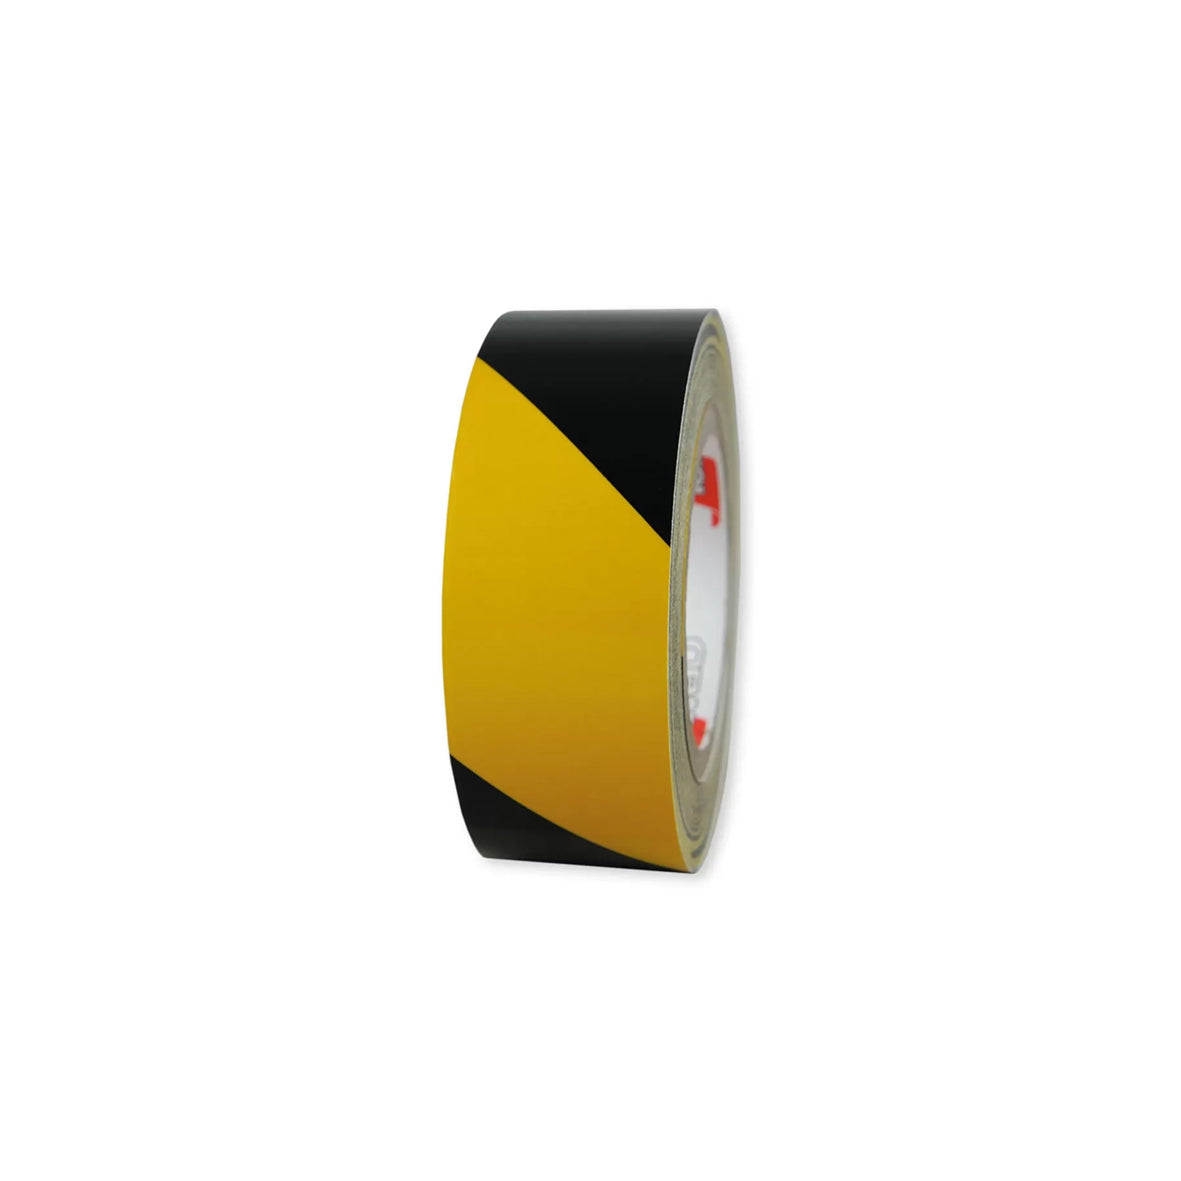 Warnmarkierungsband R1, für Fahrzeuge, R1, gelb-schwarz, 25 m x 50 mm, rechtsweisend